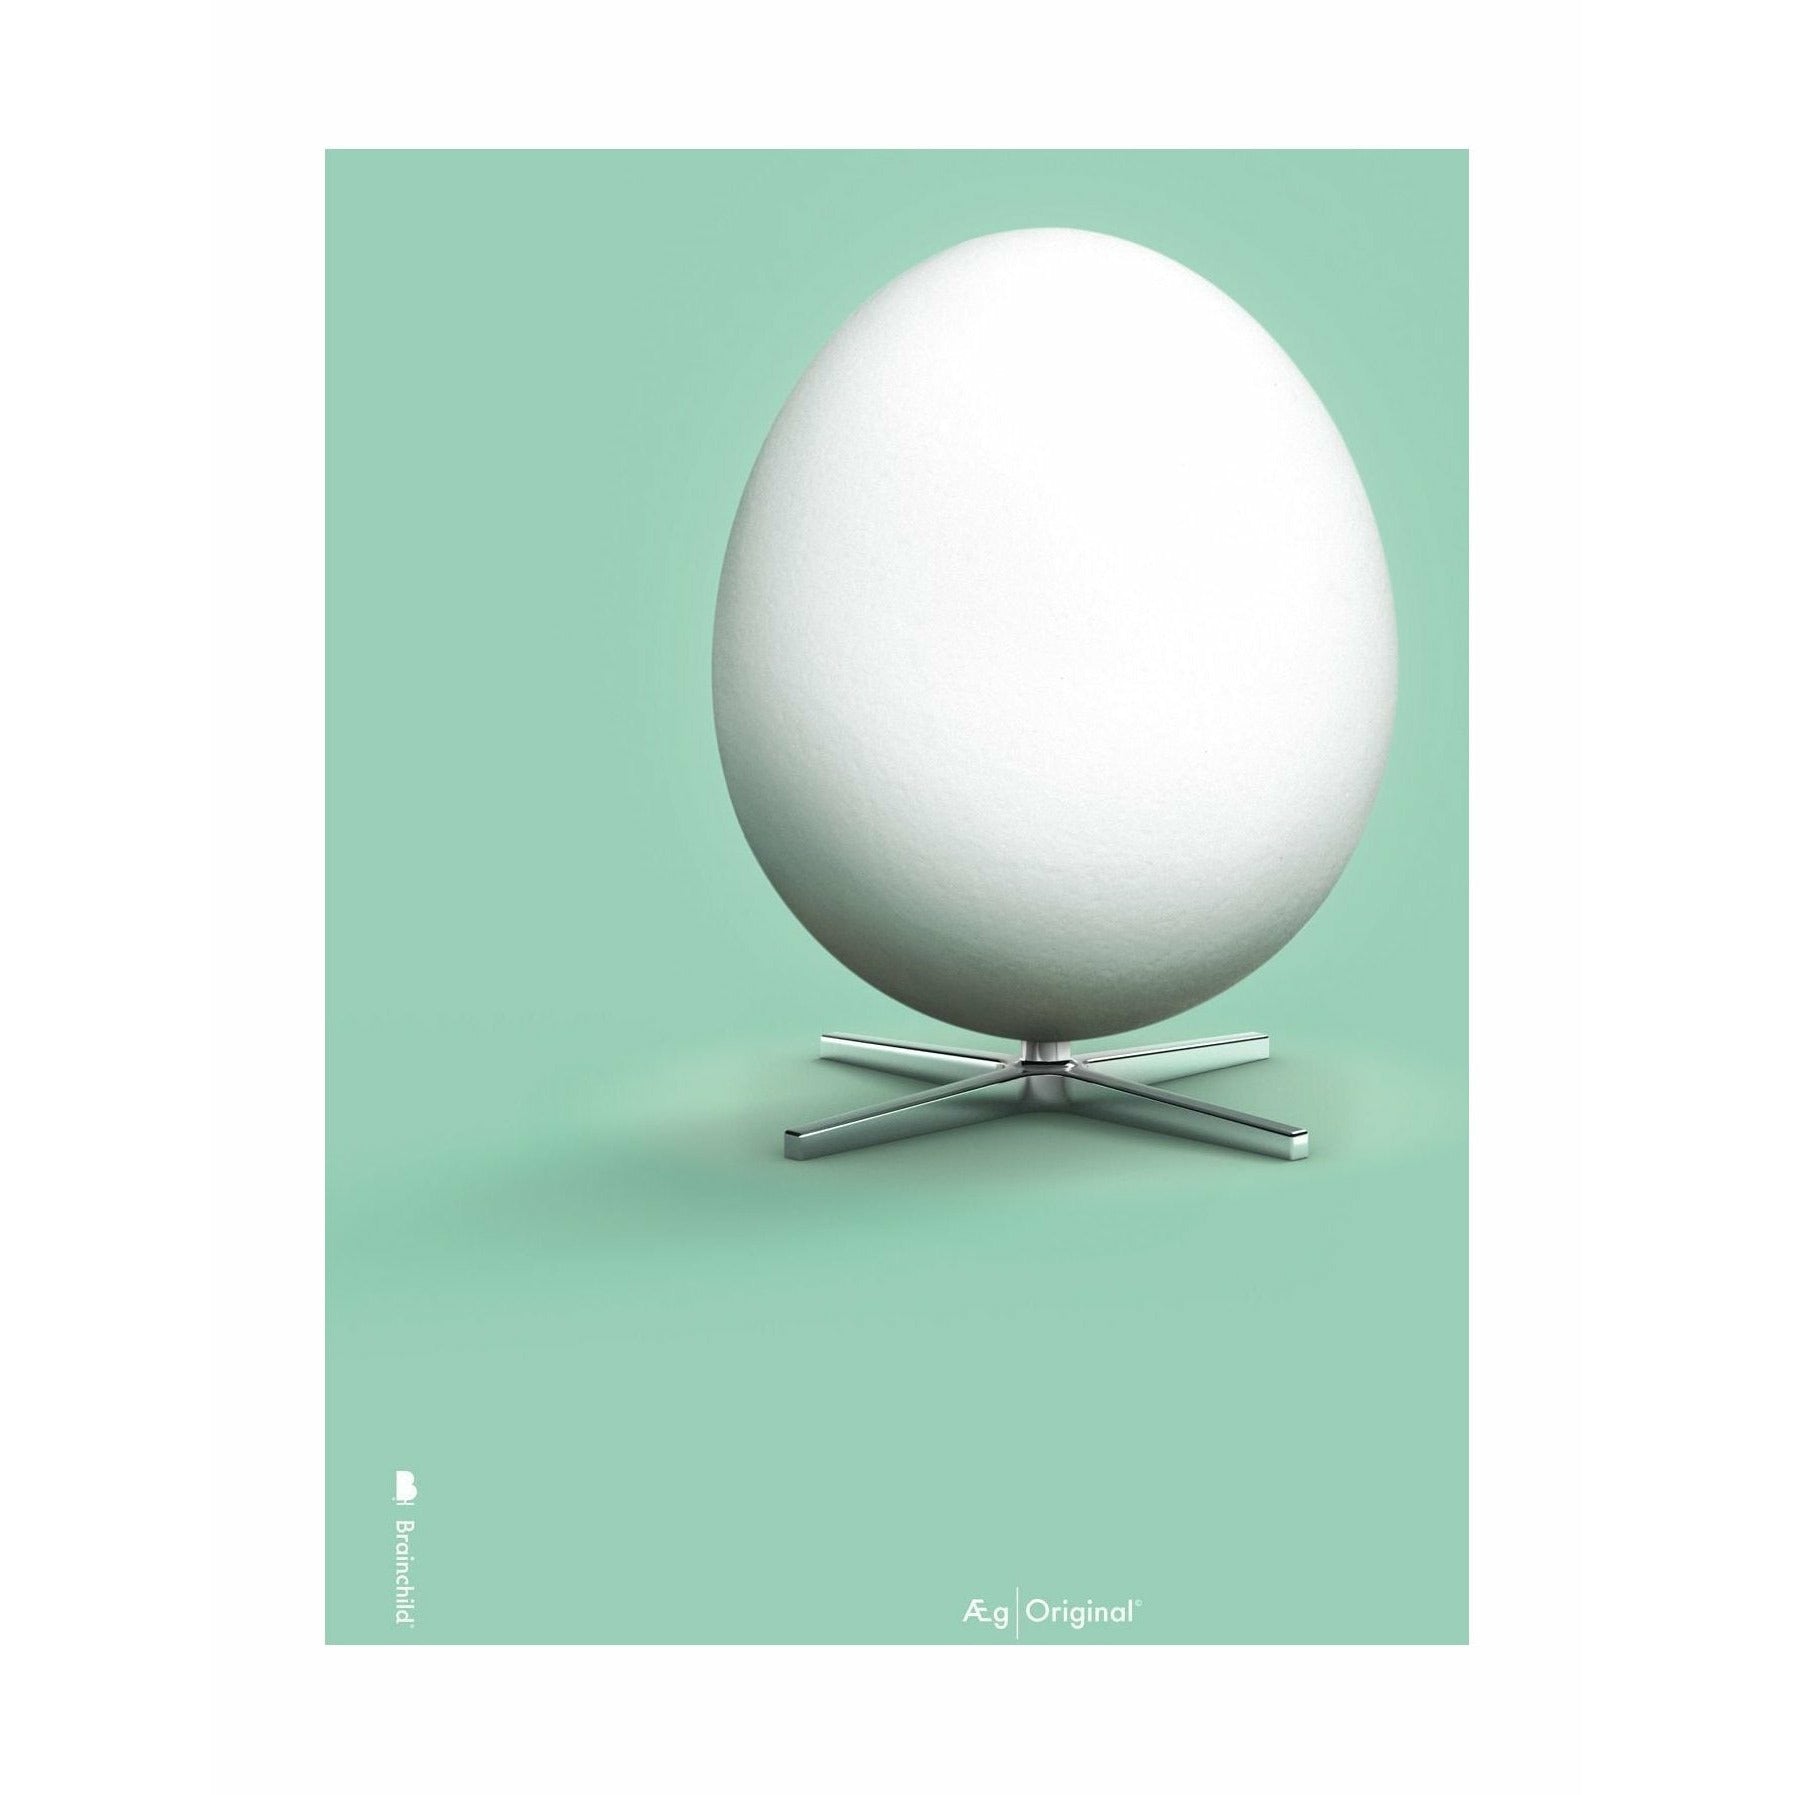 Klasyczny plakat jaja bez ramy A5, zielone tło miętowe